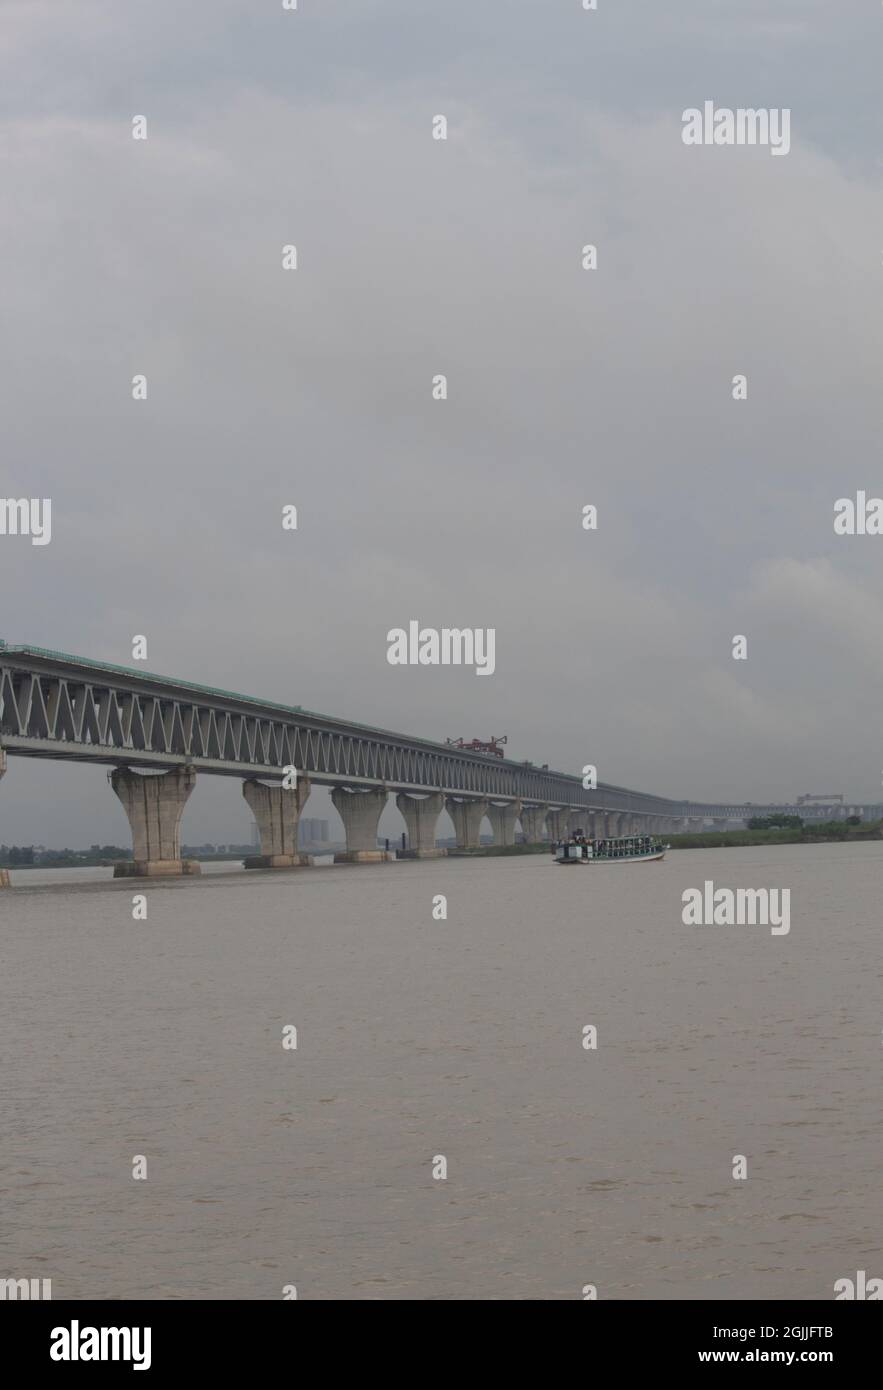 19 giugno 2021, Approach Road, Mawa, Bangladesh. Ponte Padma nel mezzo della stupefacente bellezza naturale del fiume Padma Foto Stock